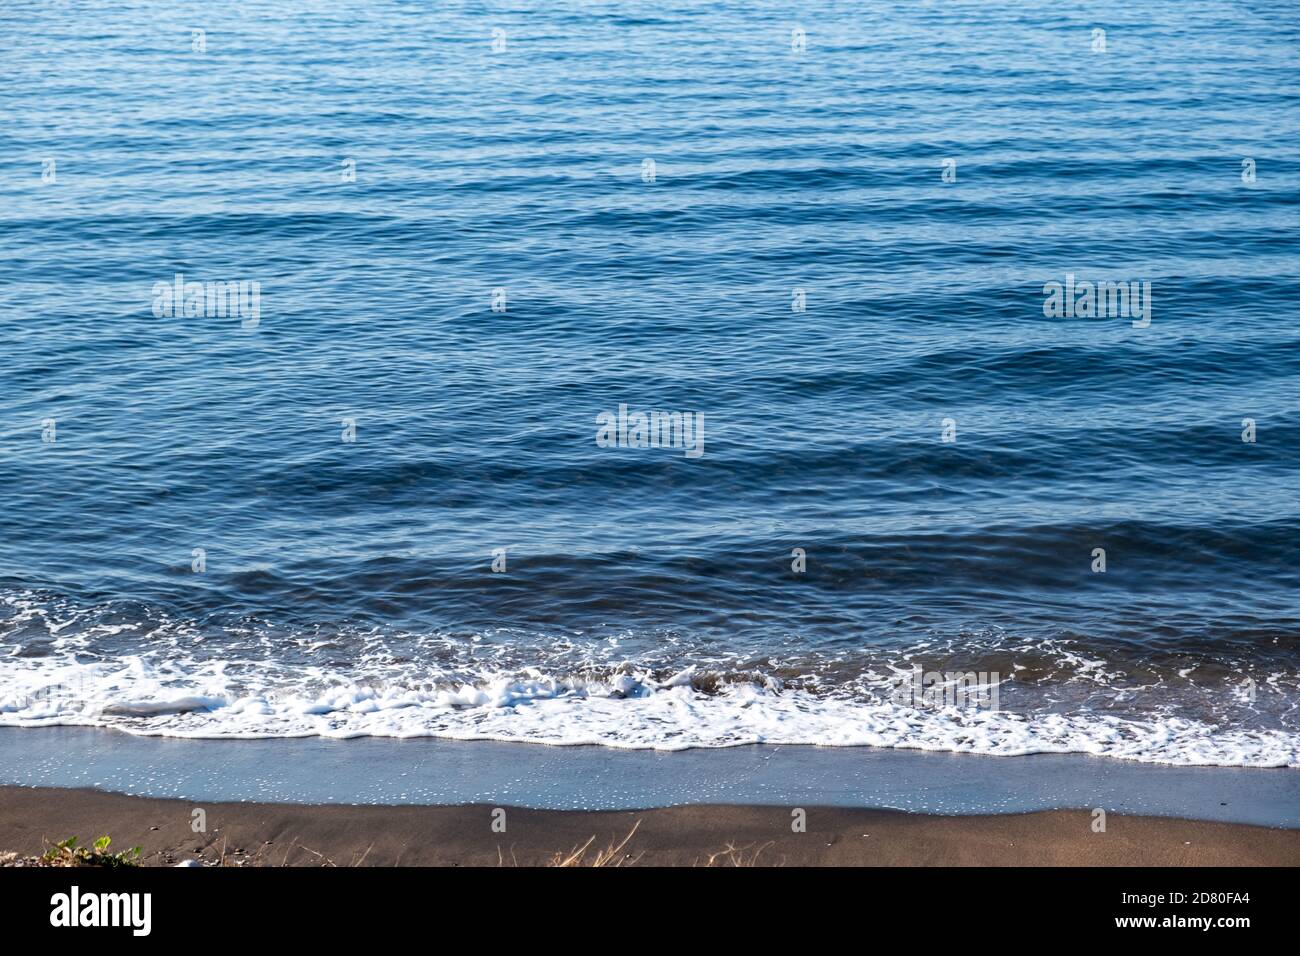 Sommerferienkonzept. Blauer ruhiger Meereshintergrund trifft auf den Sandstrand. Schaum und Reflexionen auf dem Wasser, am leeren Ufer früh am Morgen. Stockfoto